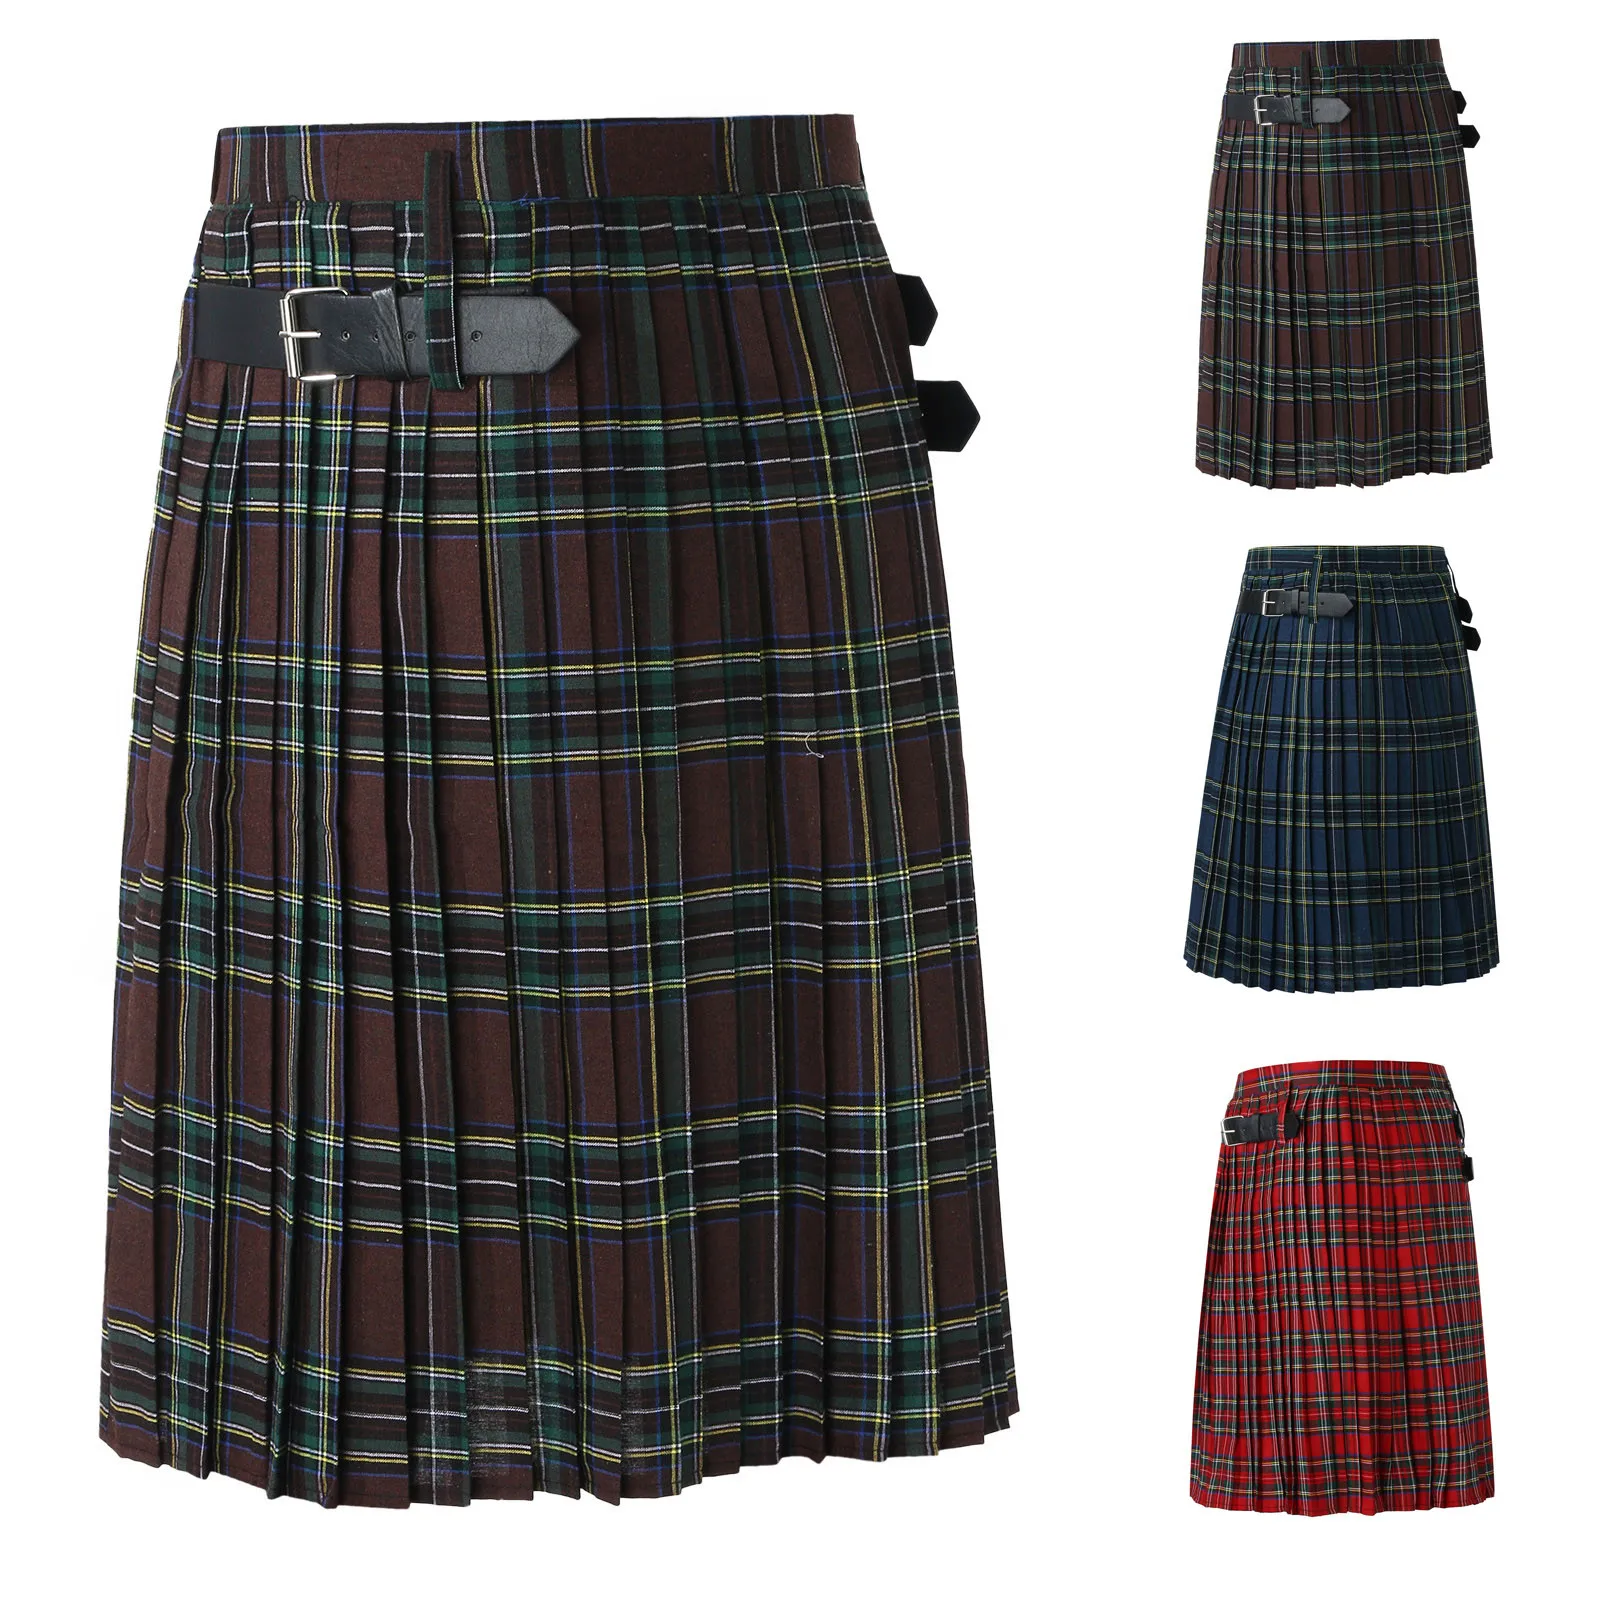 Falda plisada a cuadros para hombre, traje de moda tradicional escocesa, falda para actuaciones en escenario, informal, Retro, estilo escocés